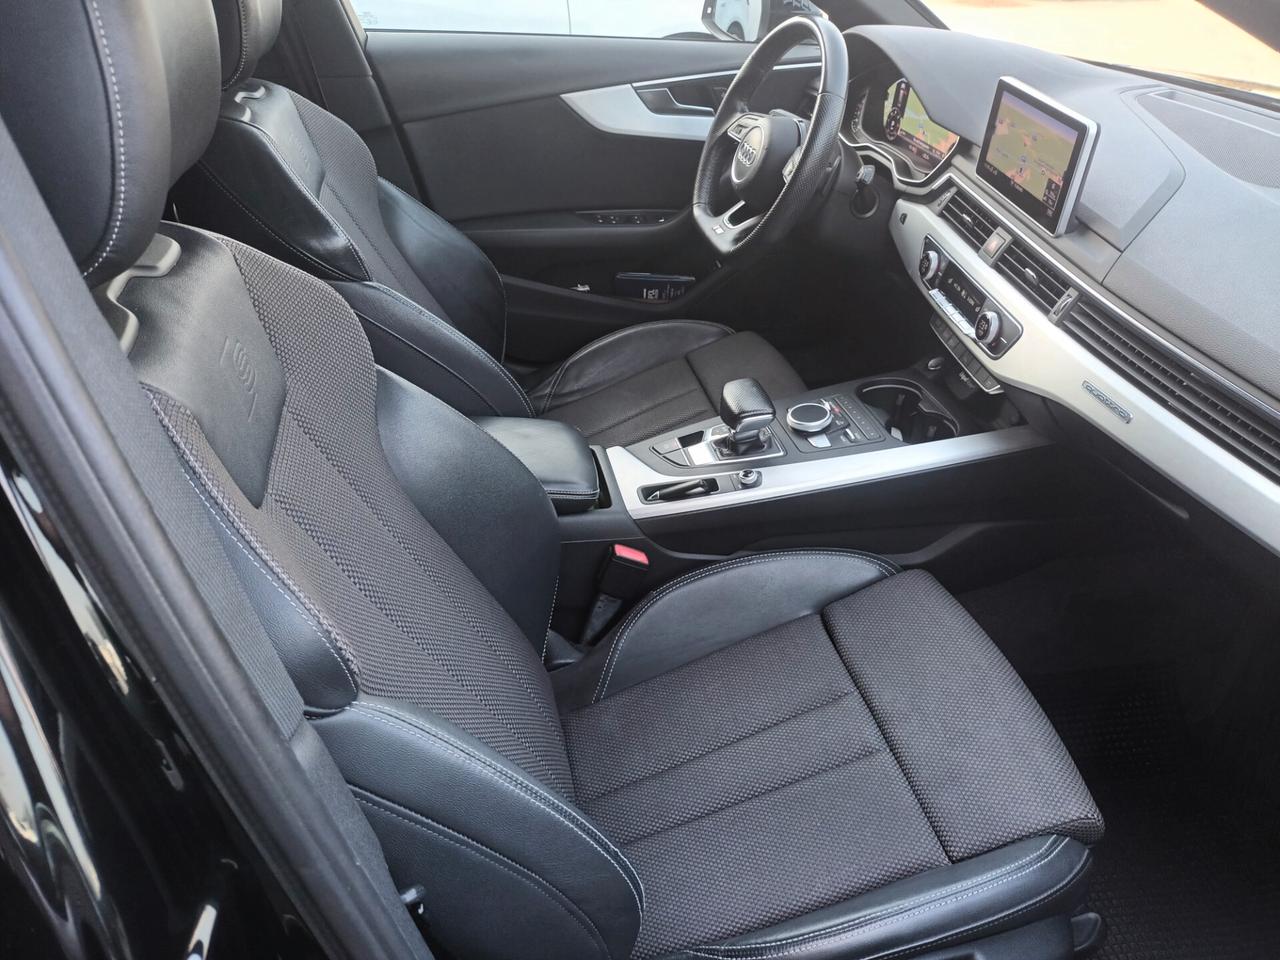 Audi A4 Avant 2.0 TDI 190 CV S tronic Quattro S-Line interno esterno